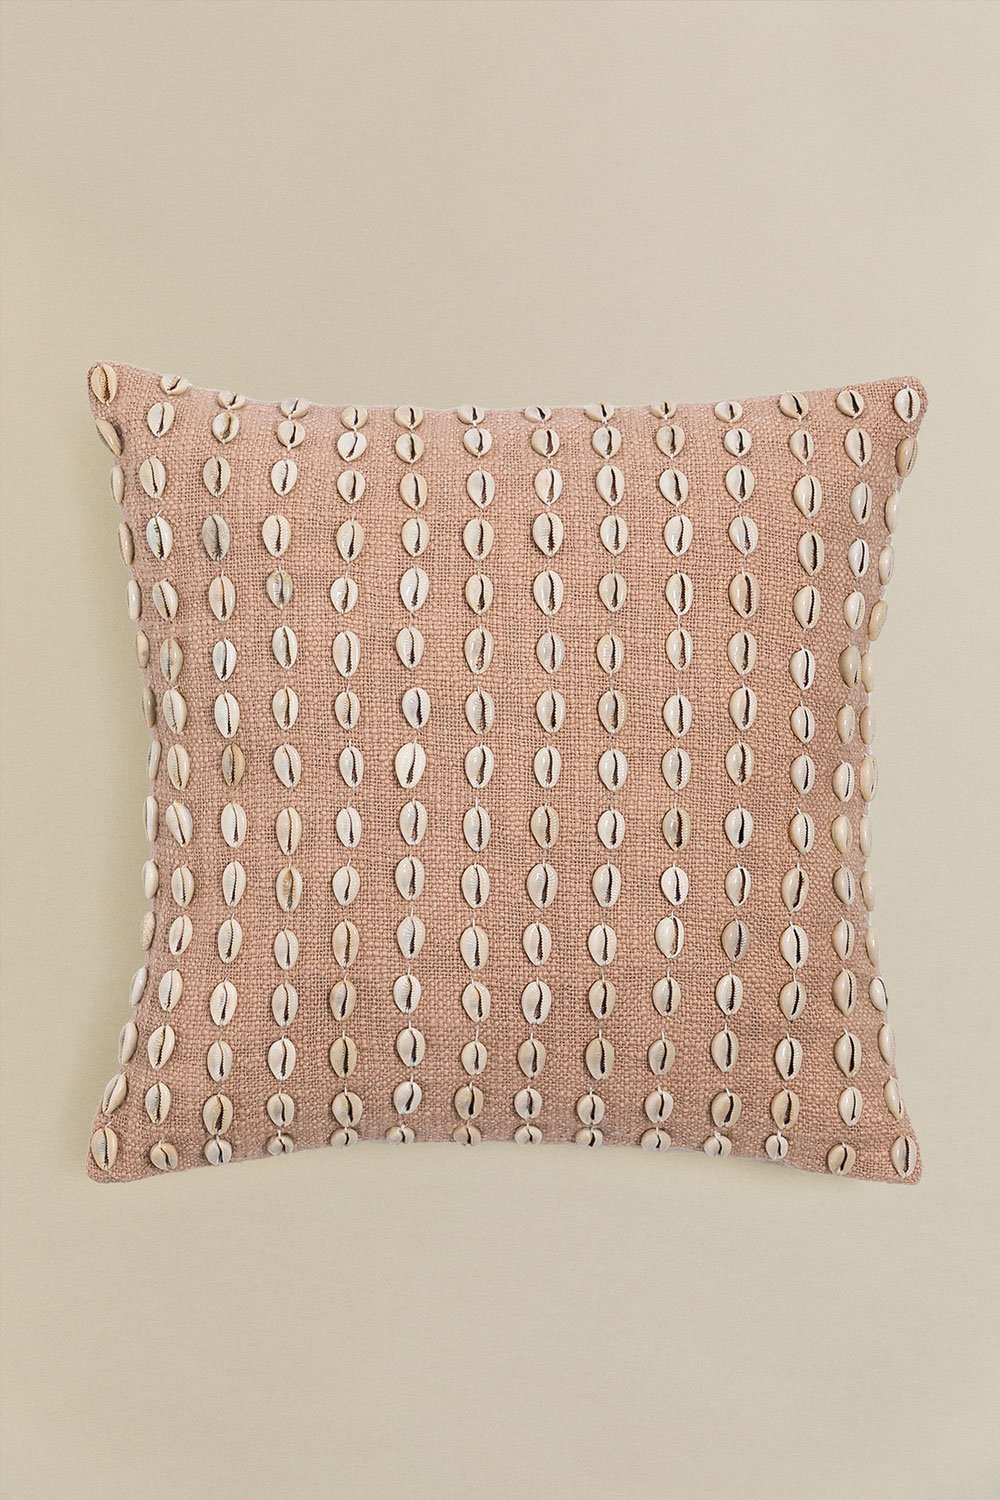 Cuscino quadrato in cotone (45x45 cm) Brusquel, immagine della galleria 1